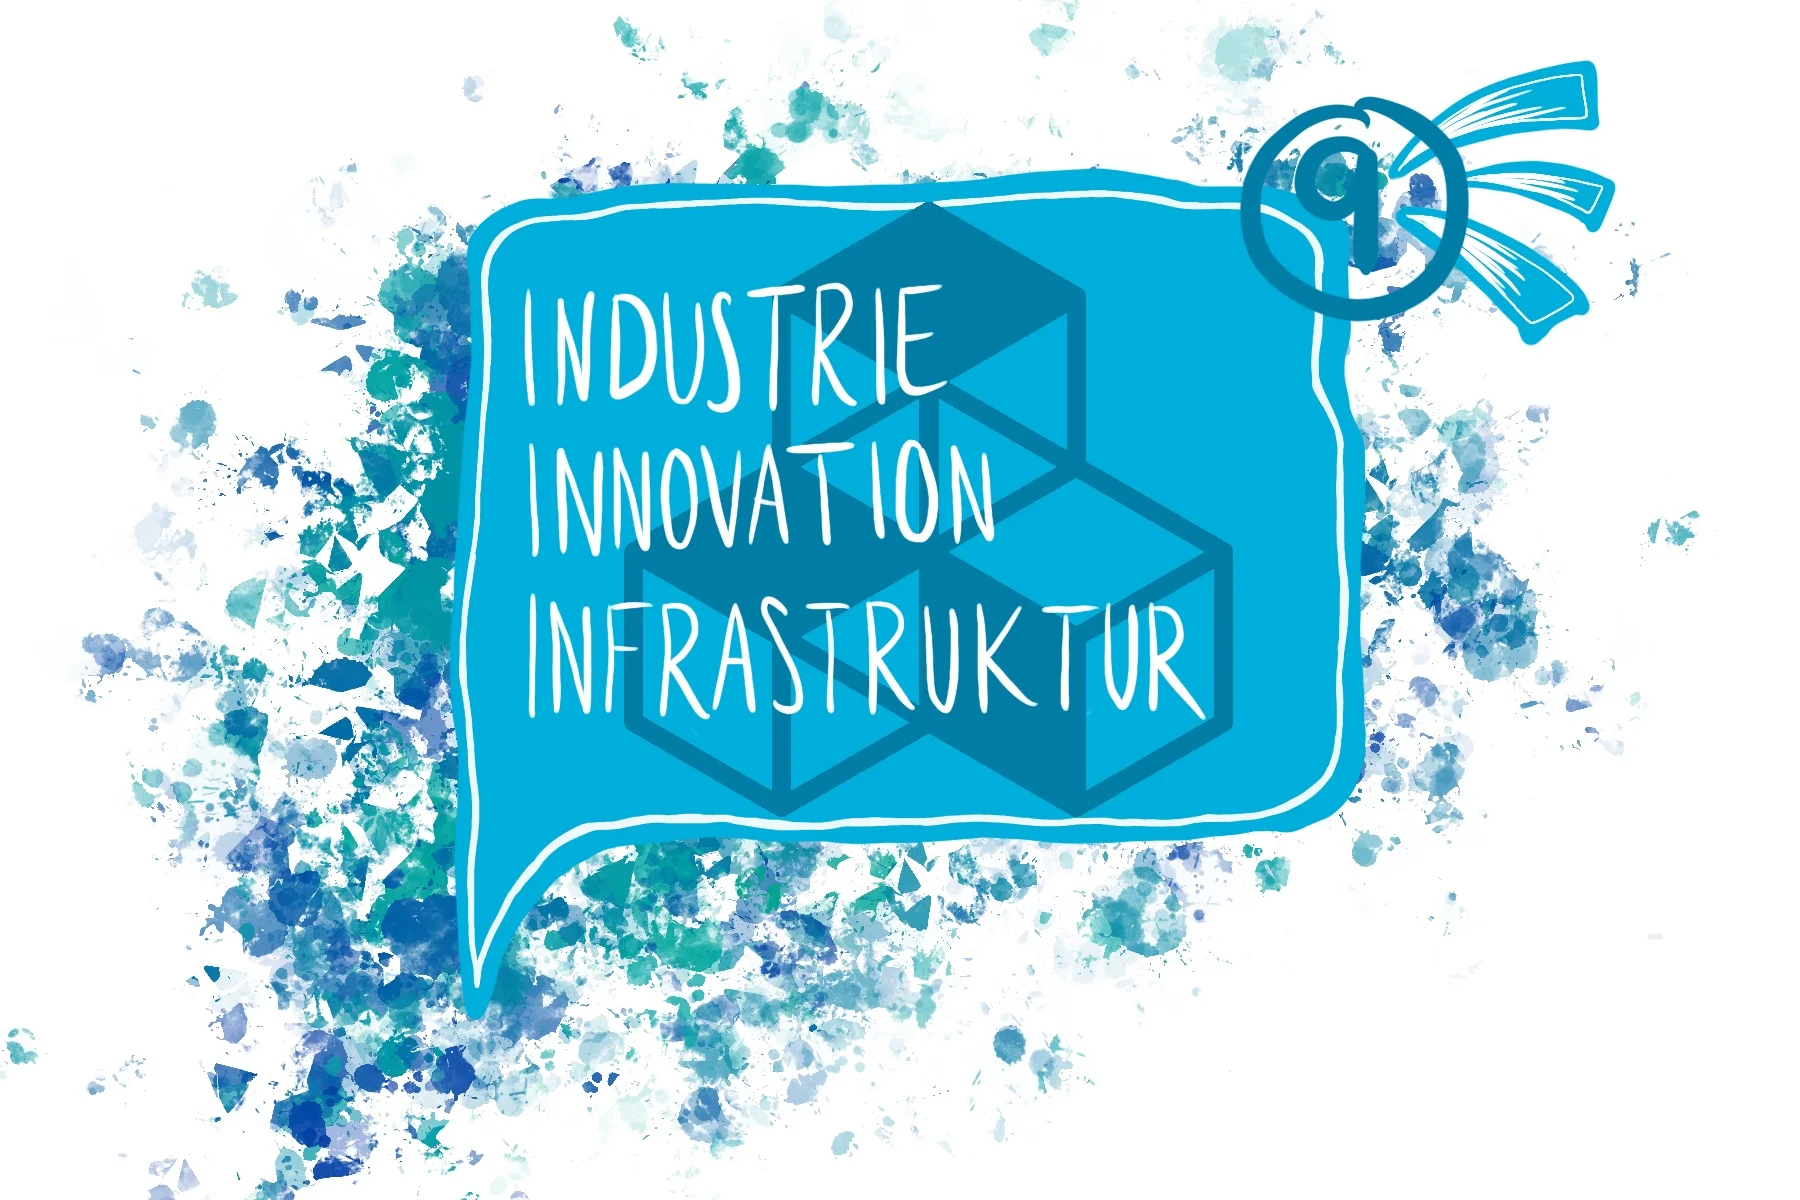 SDG Industrie Innovation Infrastruktur